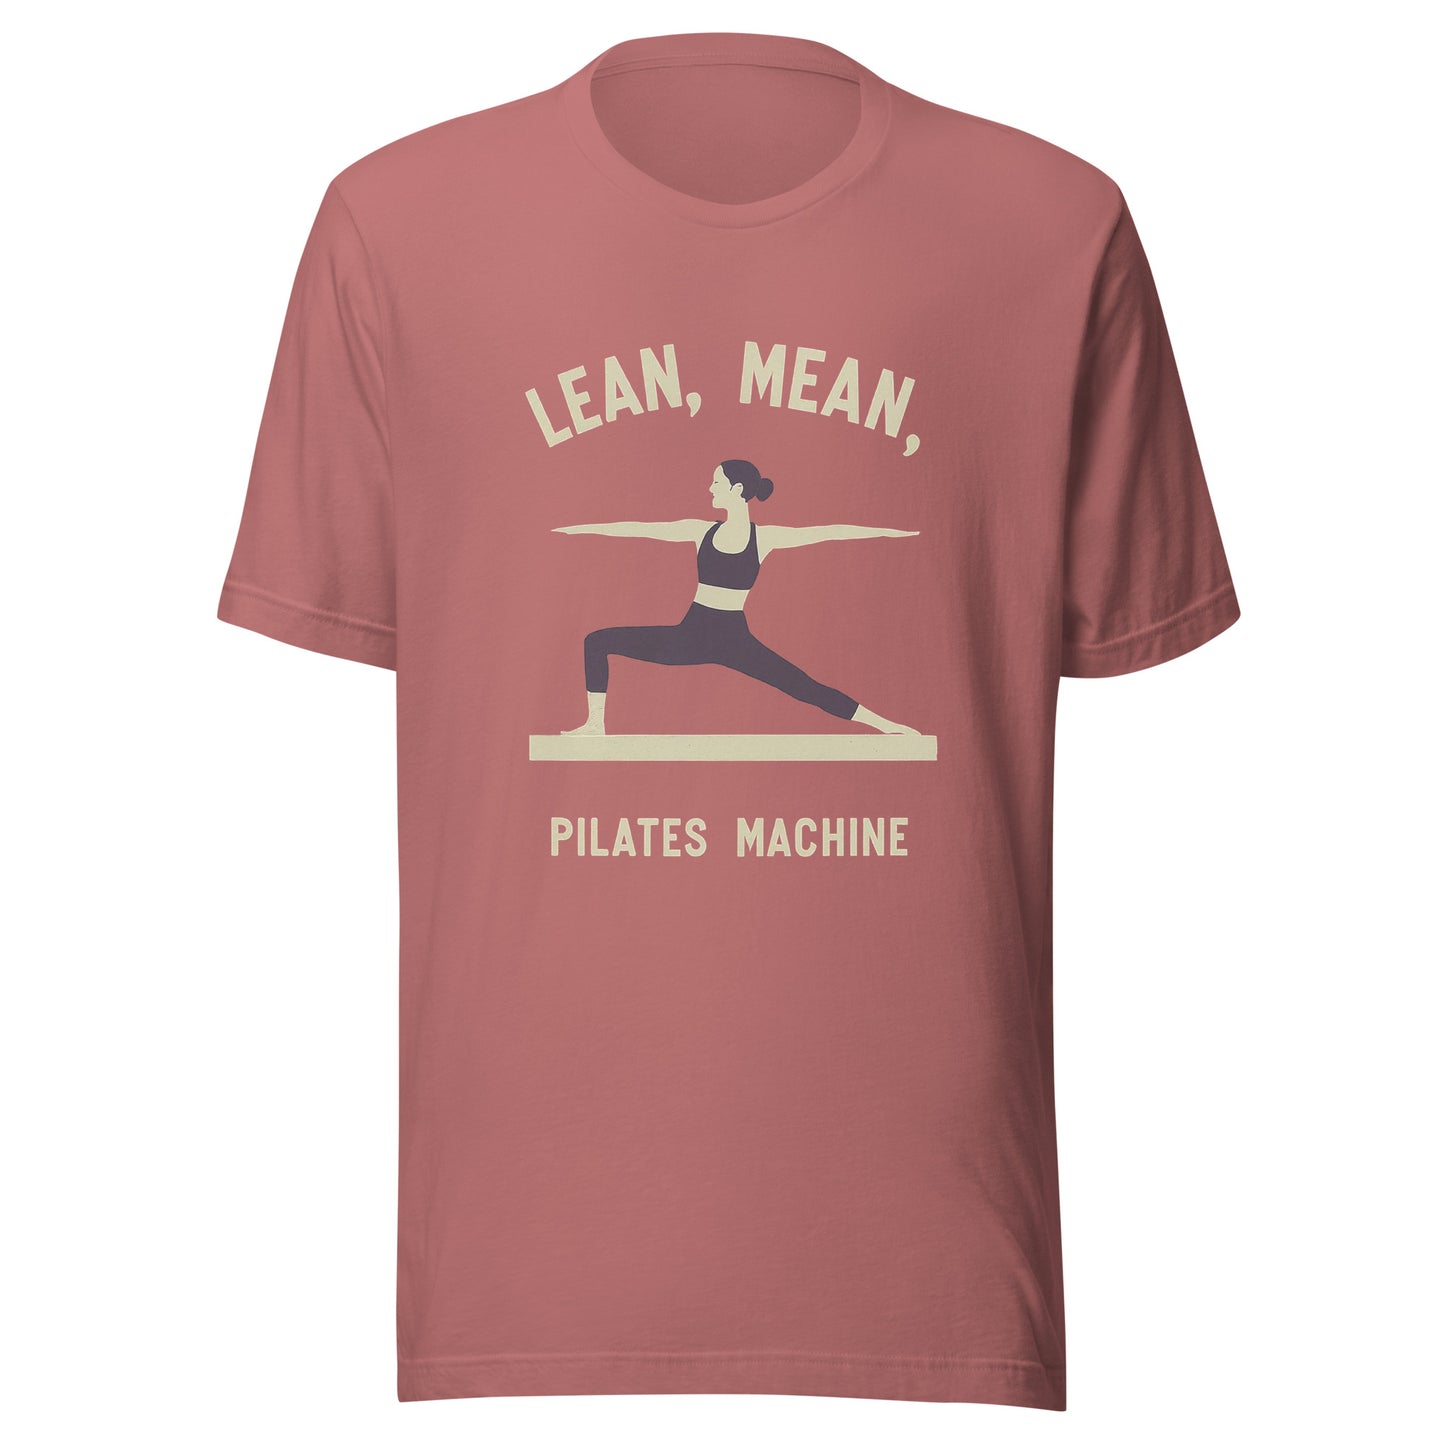 Lean, Mean, Pilates Machine Tee